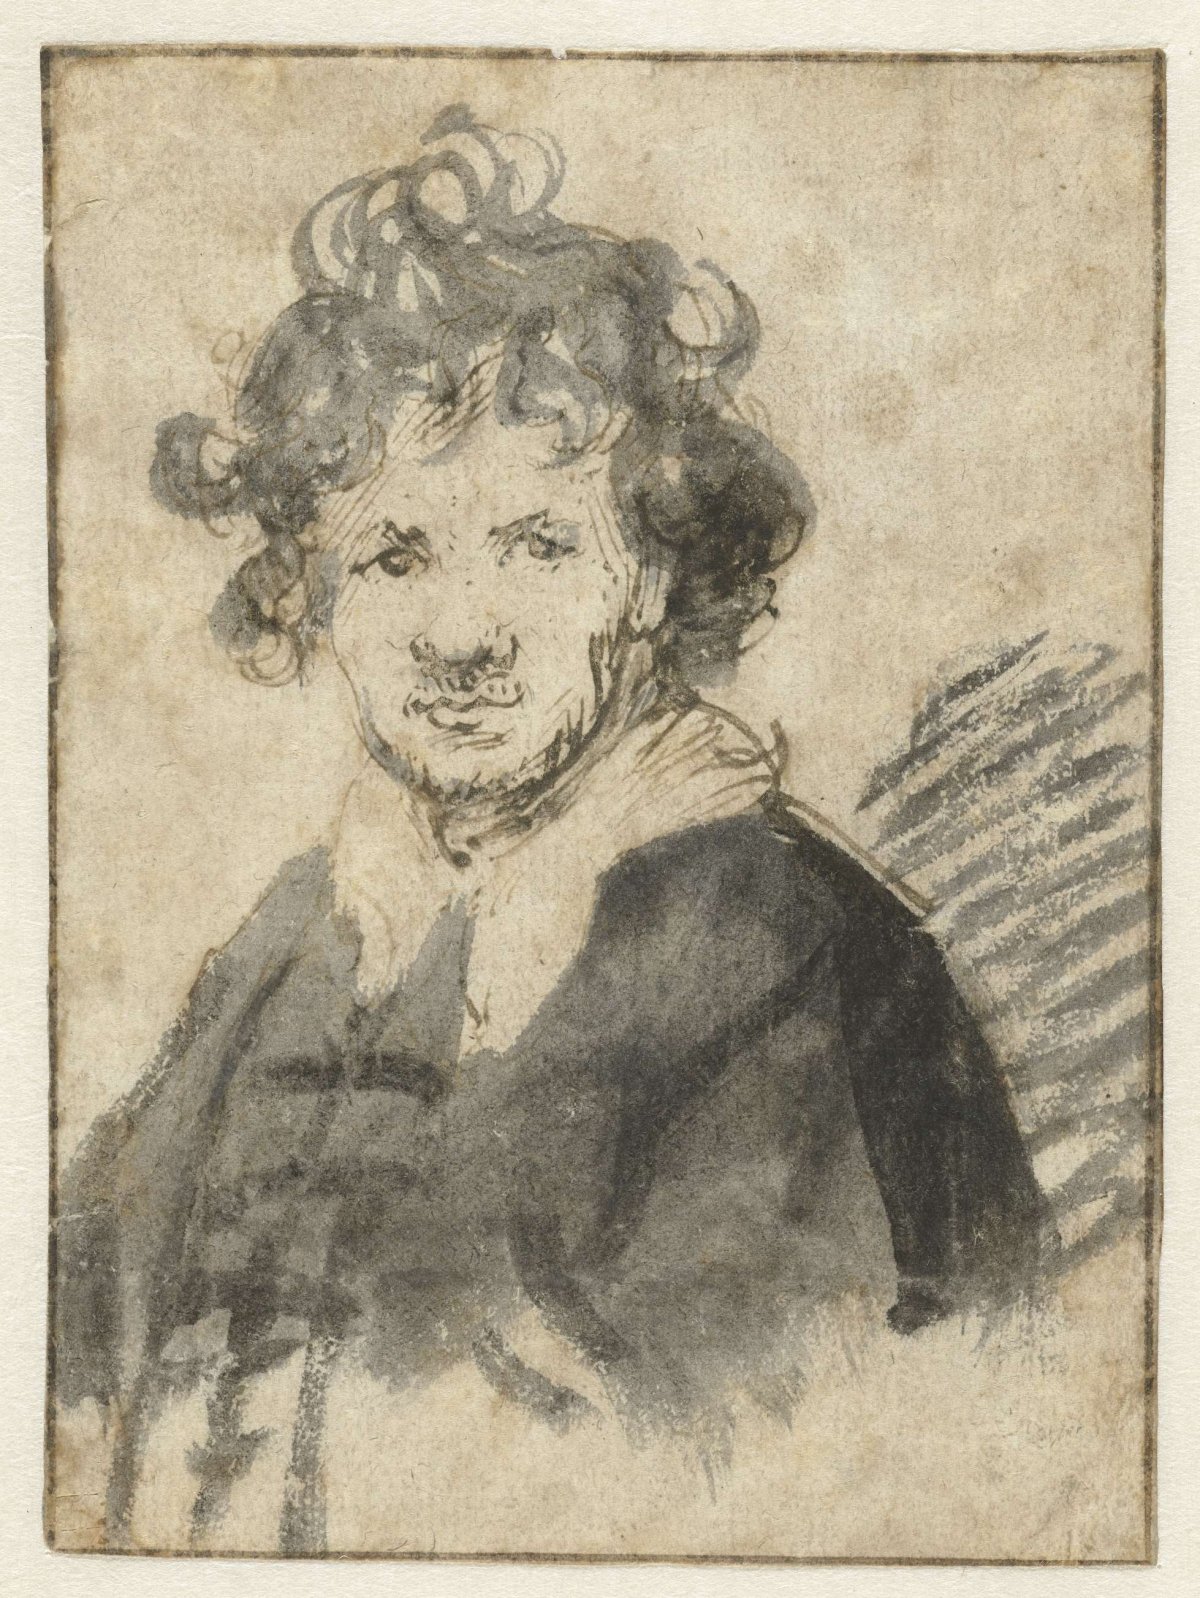 Self-portrait with Tousled Hair, Rembrandt van Rijn, c. 1628 - c. 1629